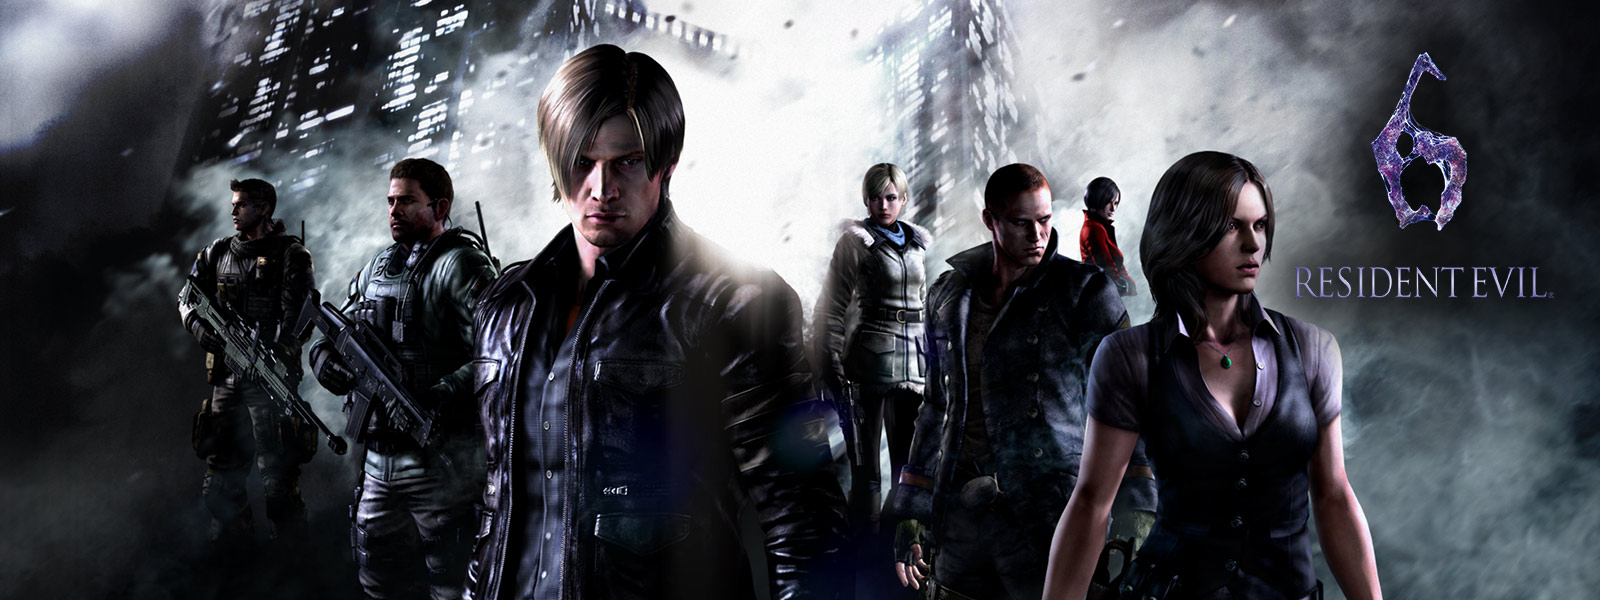 Resident Evil 6, wszystkie postacie z gier Resident Evil stoją na tle złowieszczych drapaczy chmur